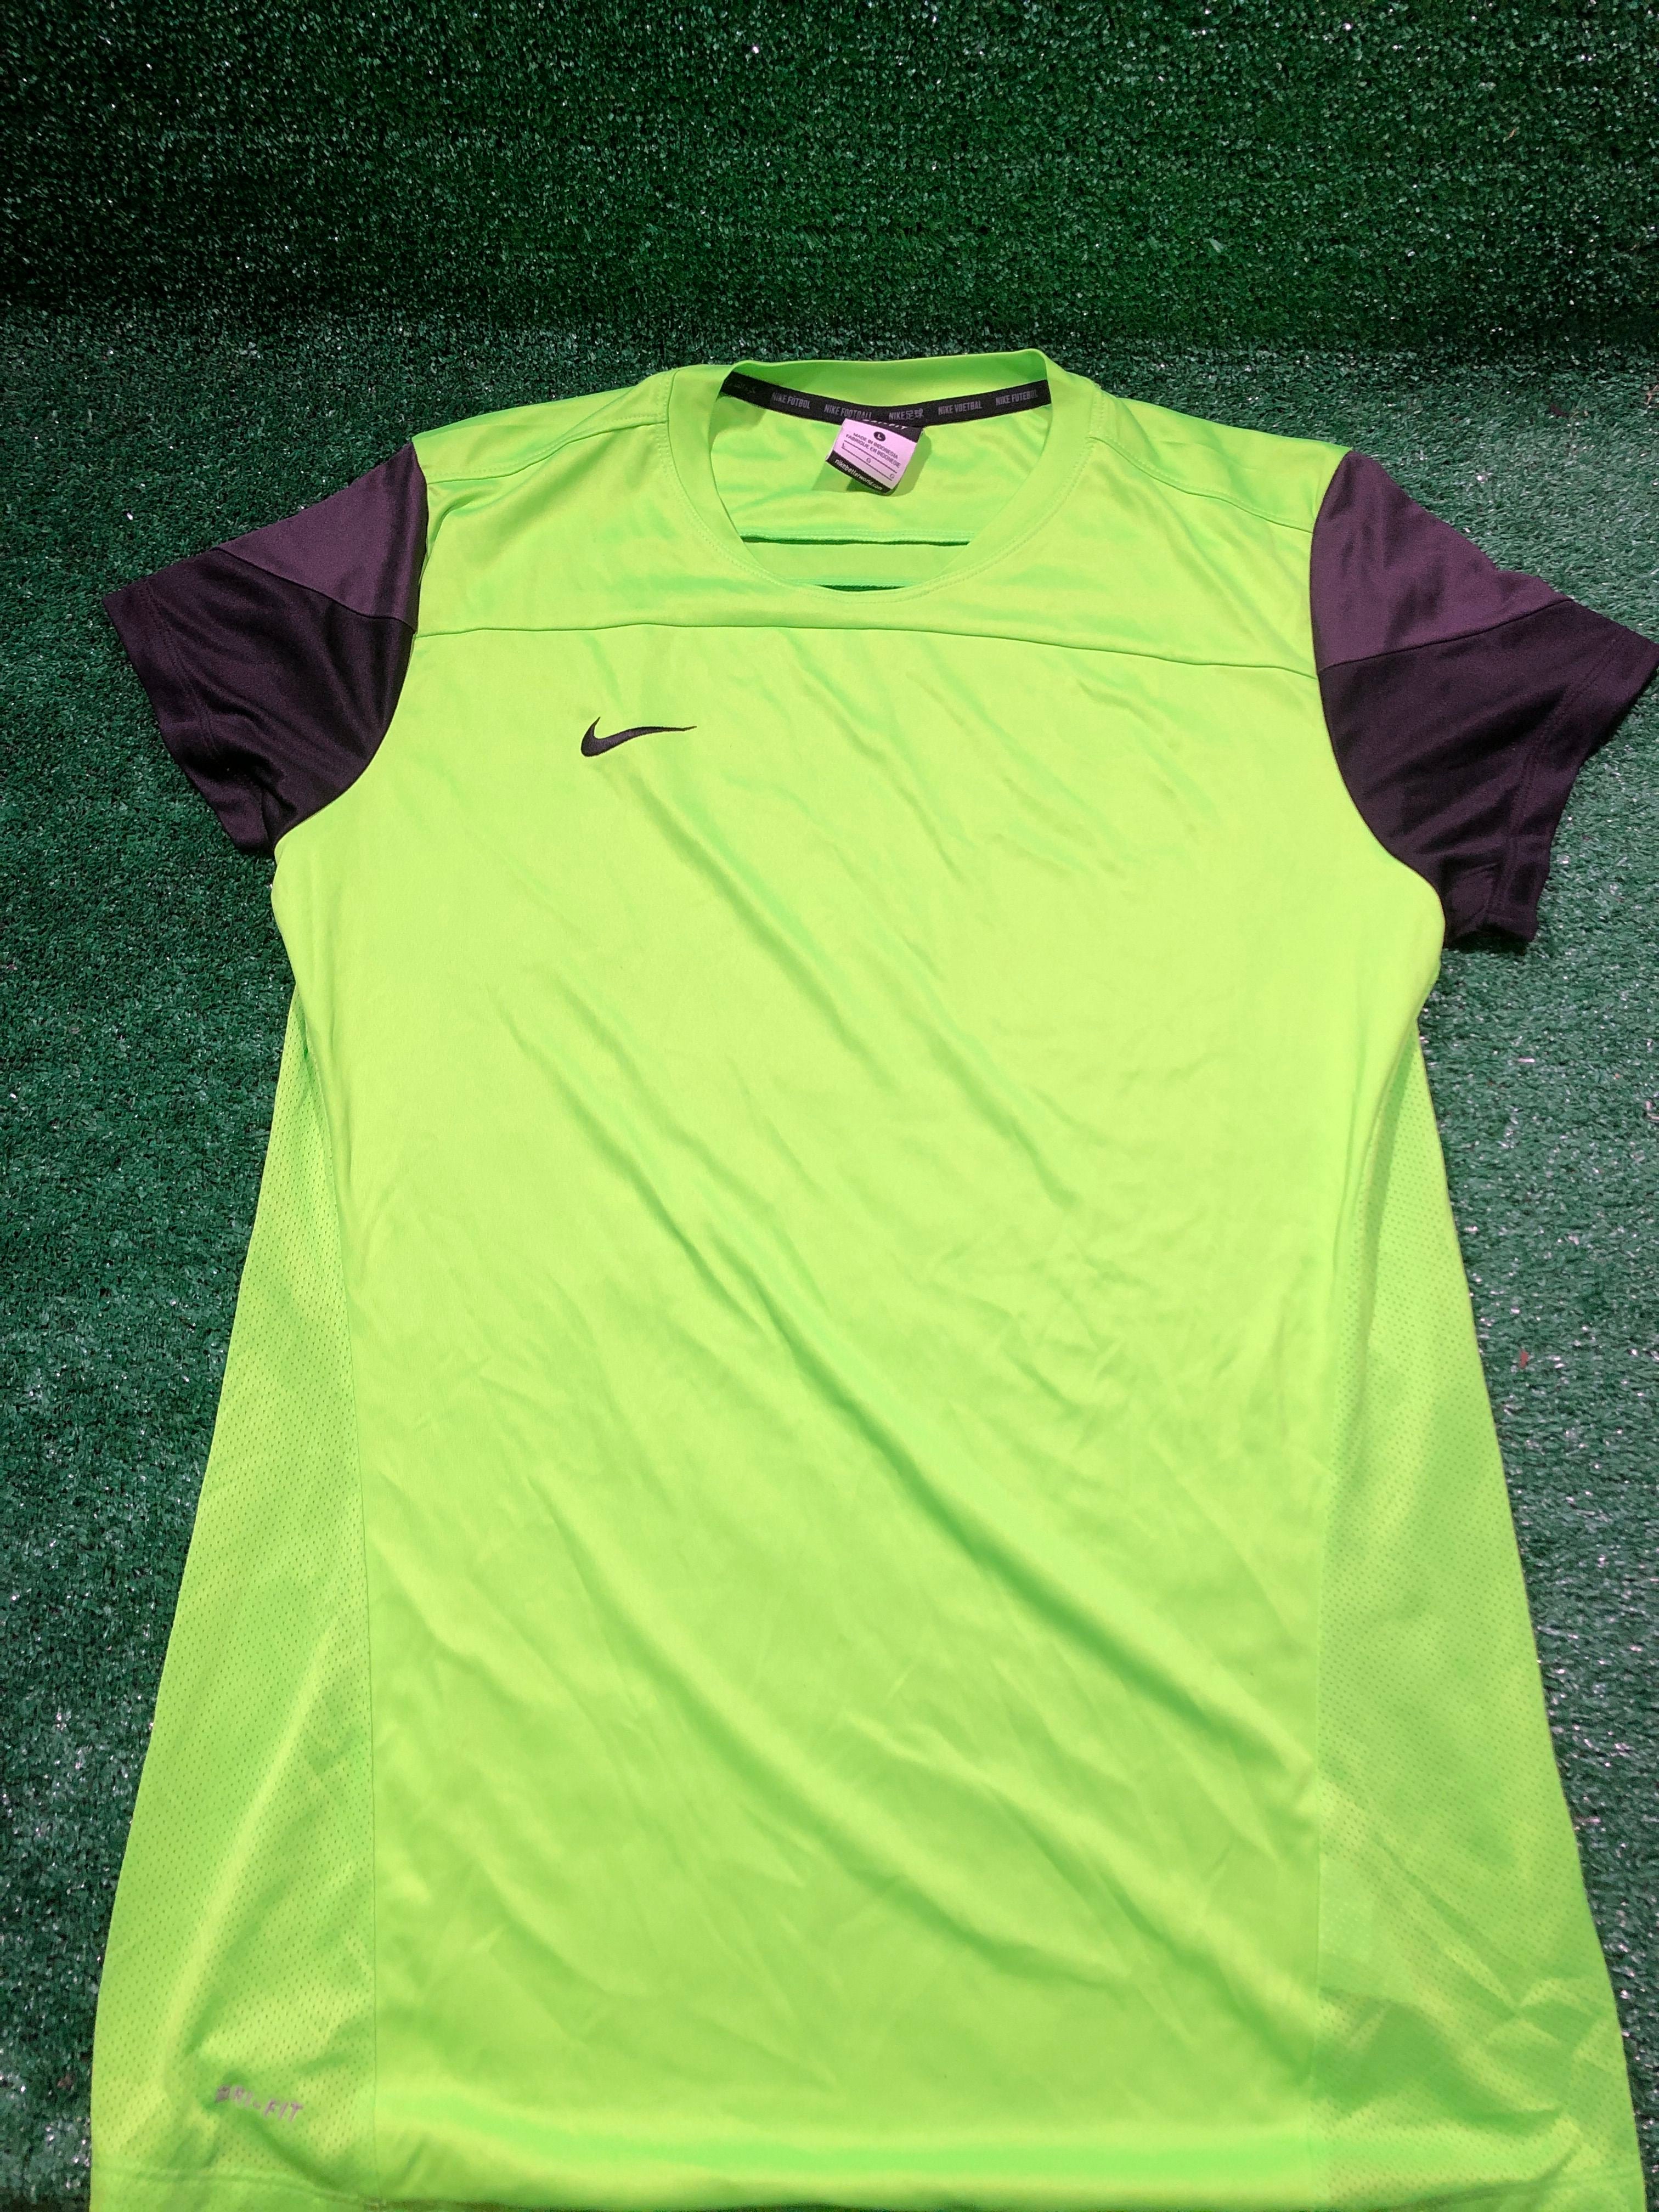 monster Tegenstander Evolueren Nike Football Dri-Fit Large (L) Shirt | SidelineSwap